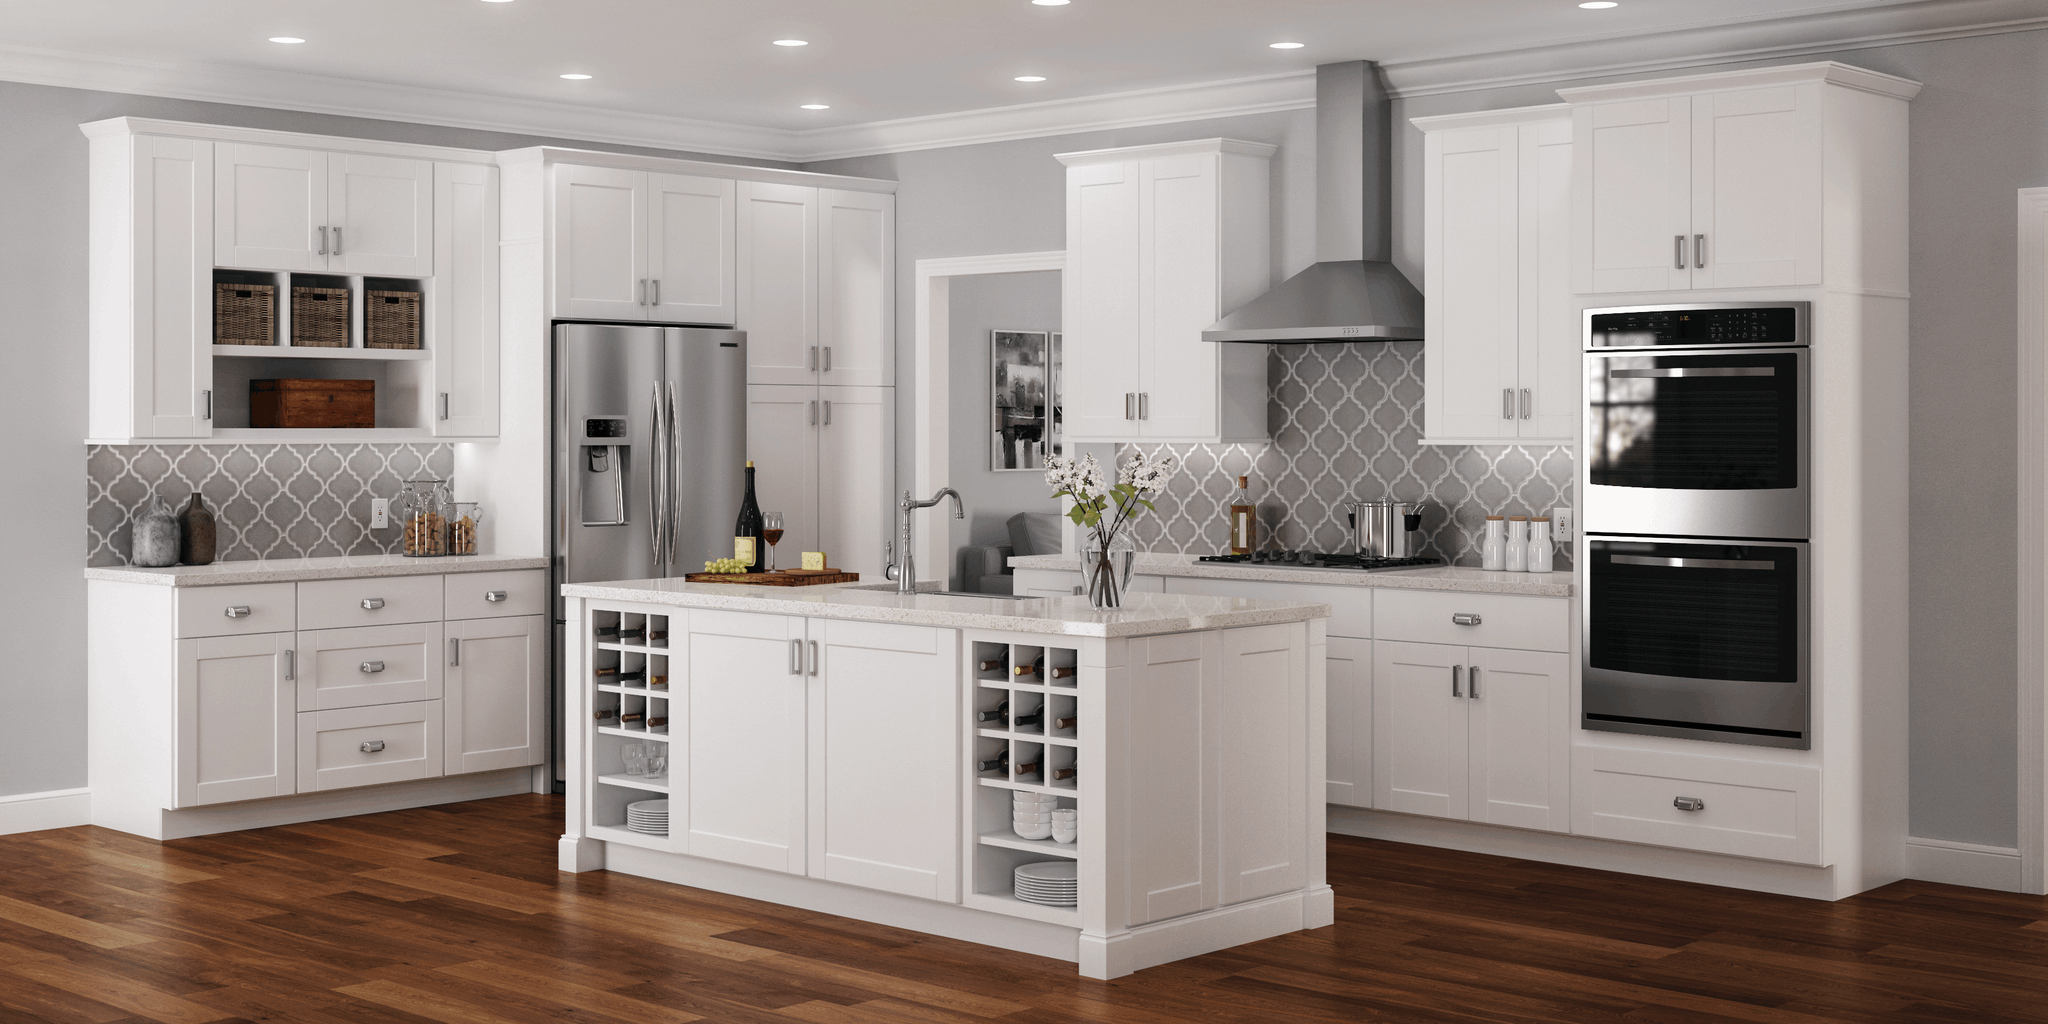 Home Hampton Bay Kitchen Cabinets